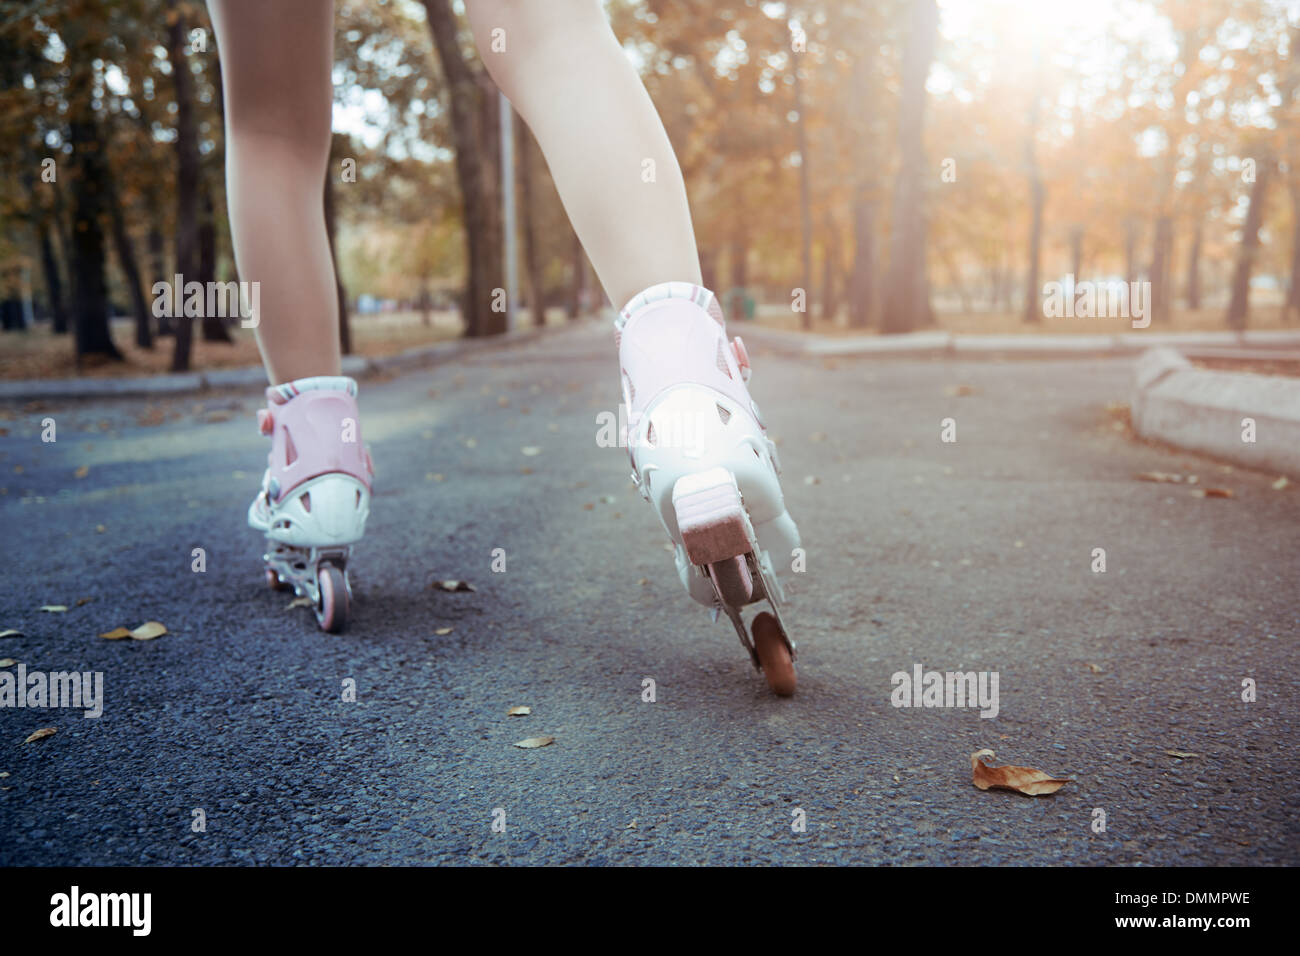 Legs of teenager having roller skate exercise in public park Stock Photo